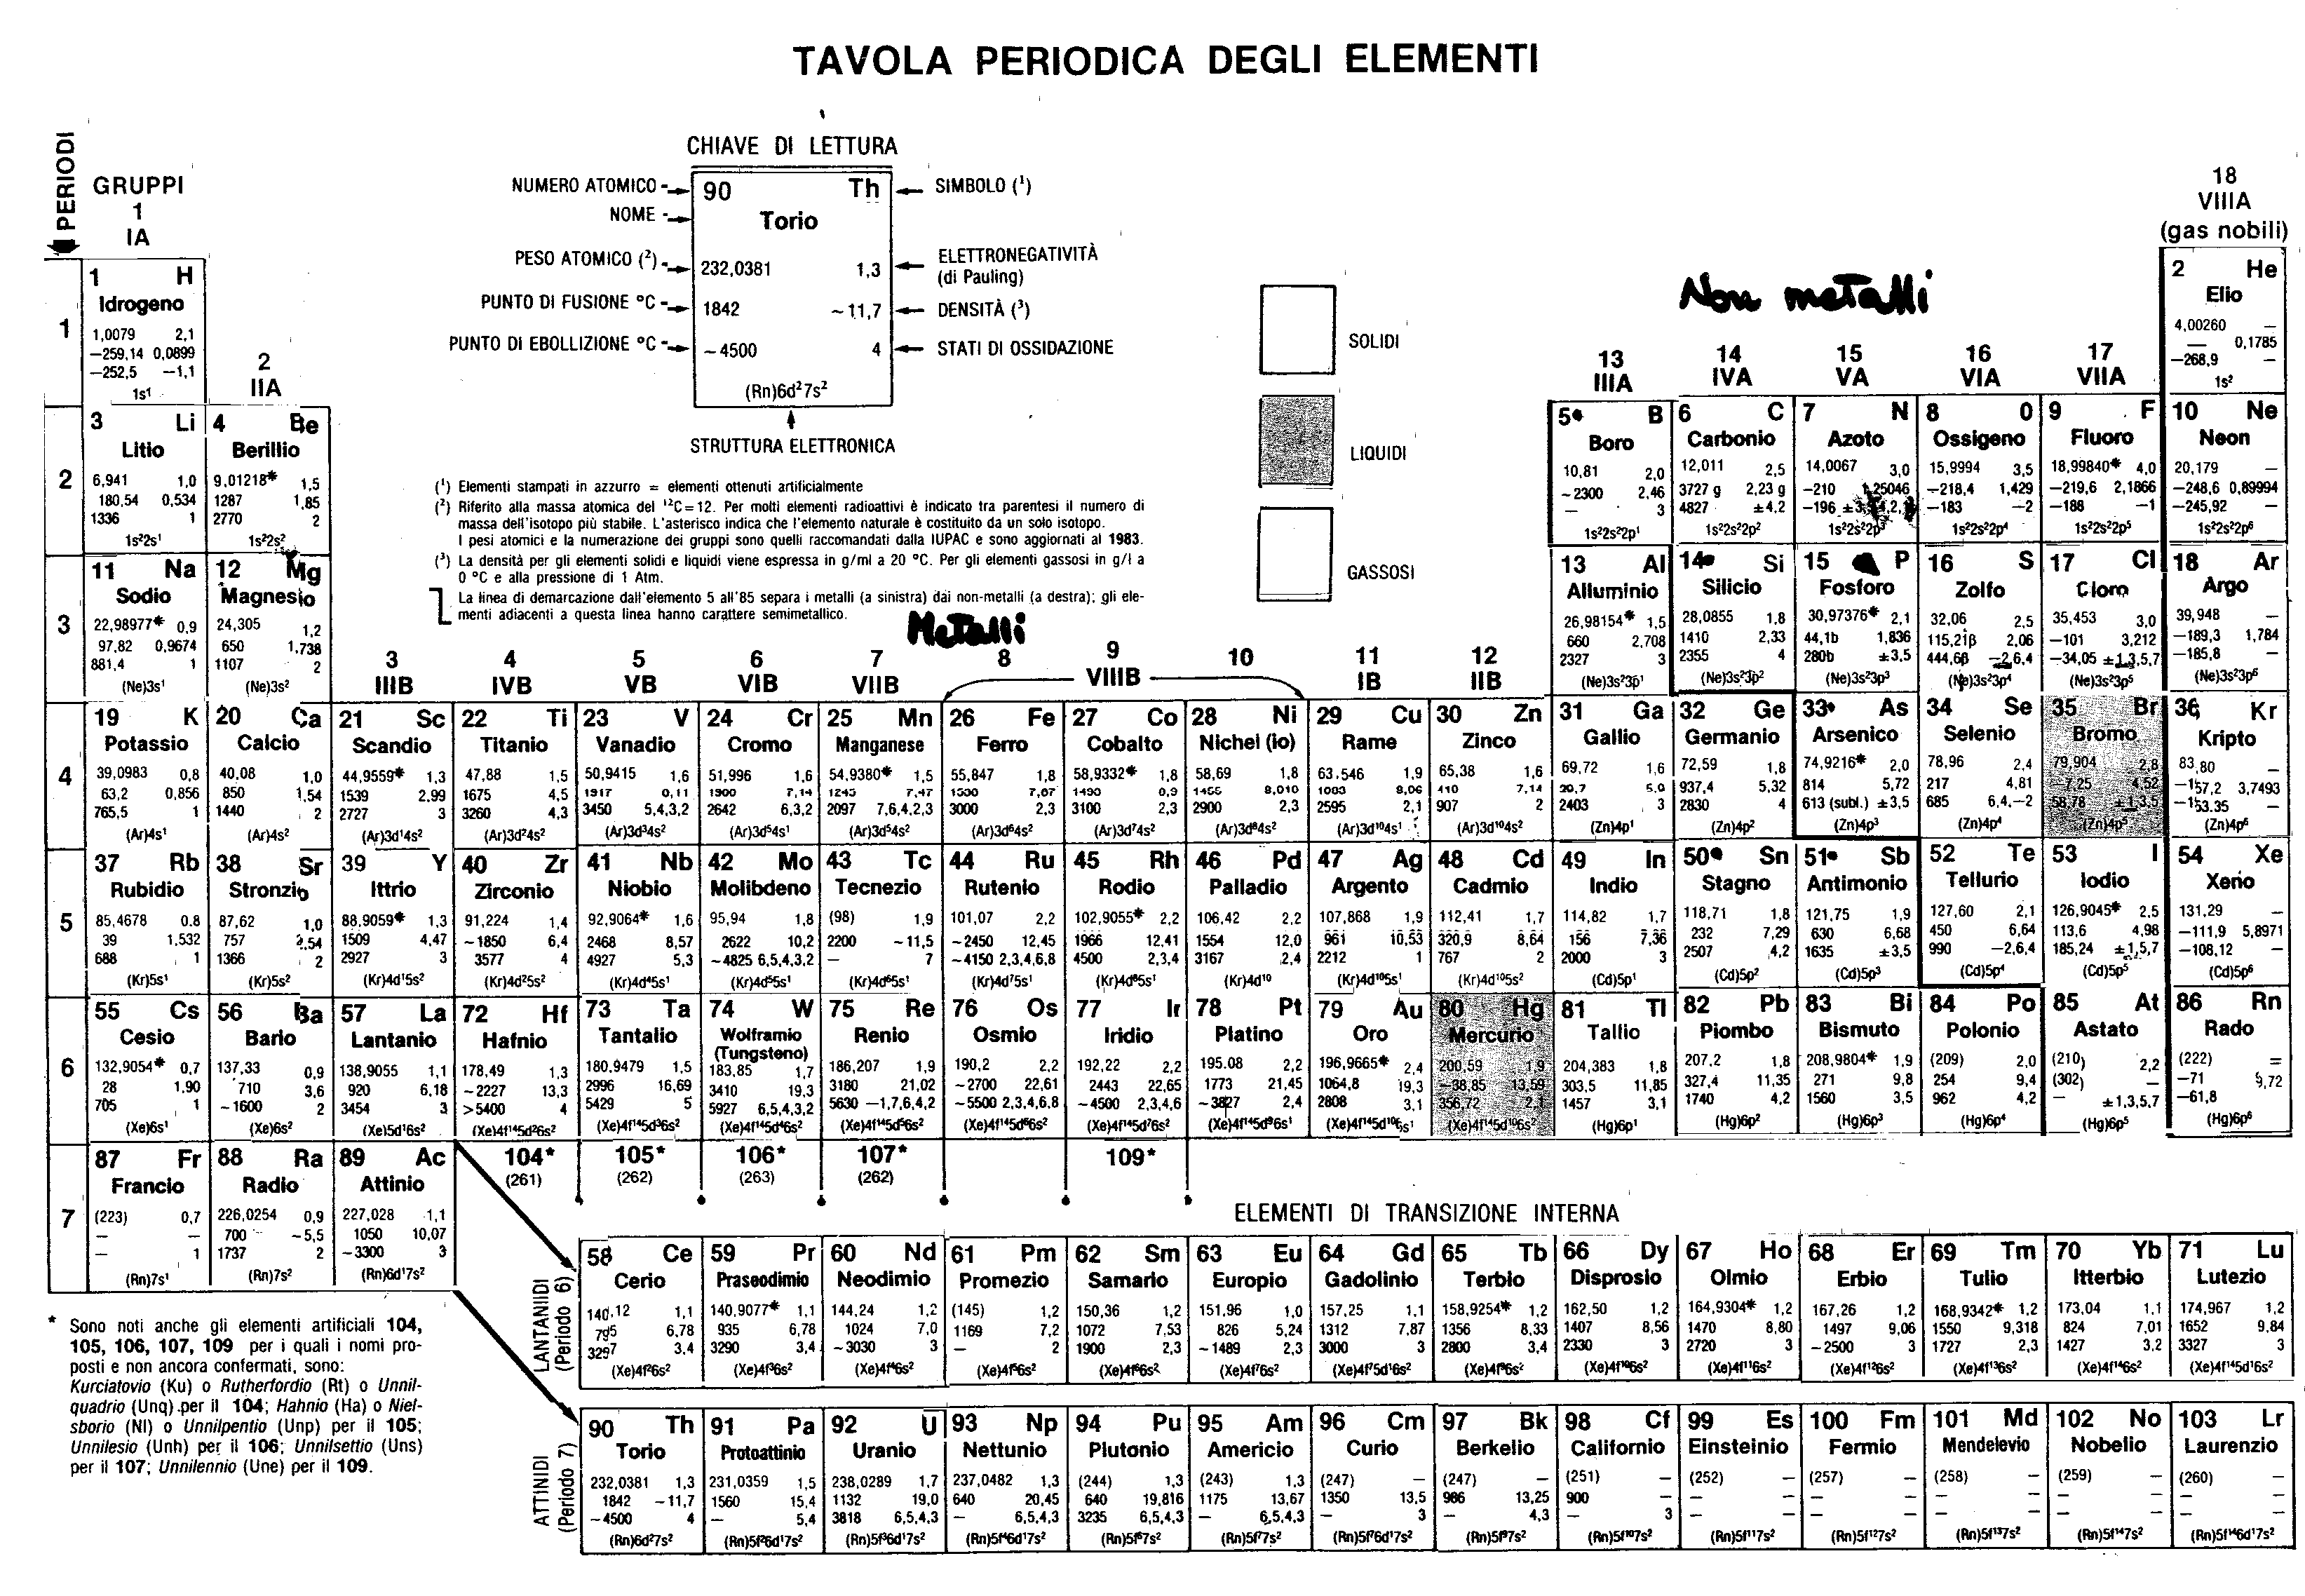 La tavola periodica degli elementi - Test di verifica a risposta multipla